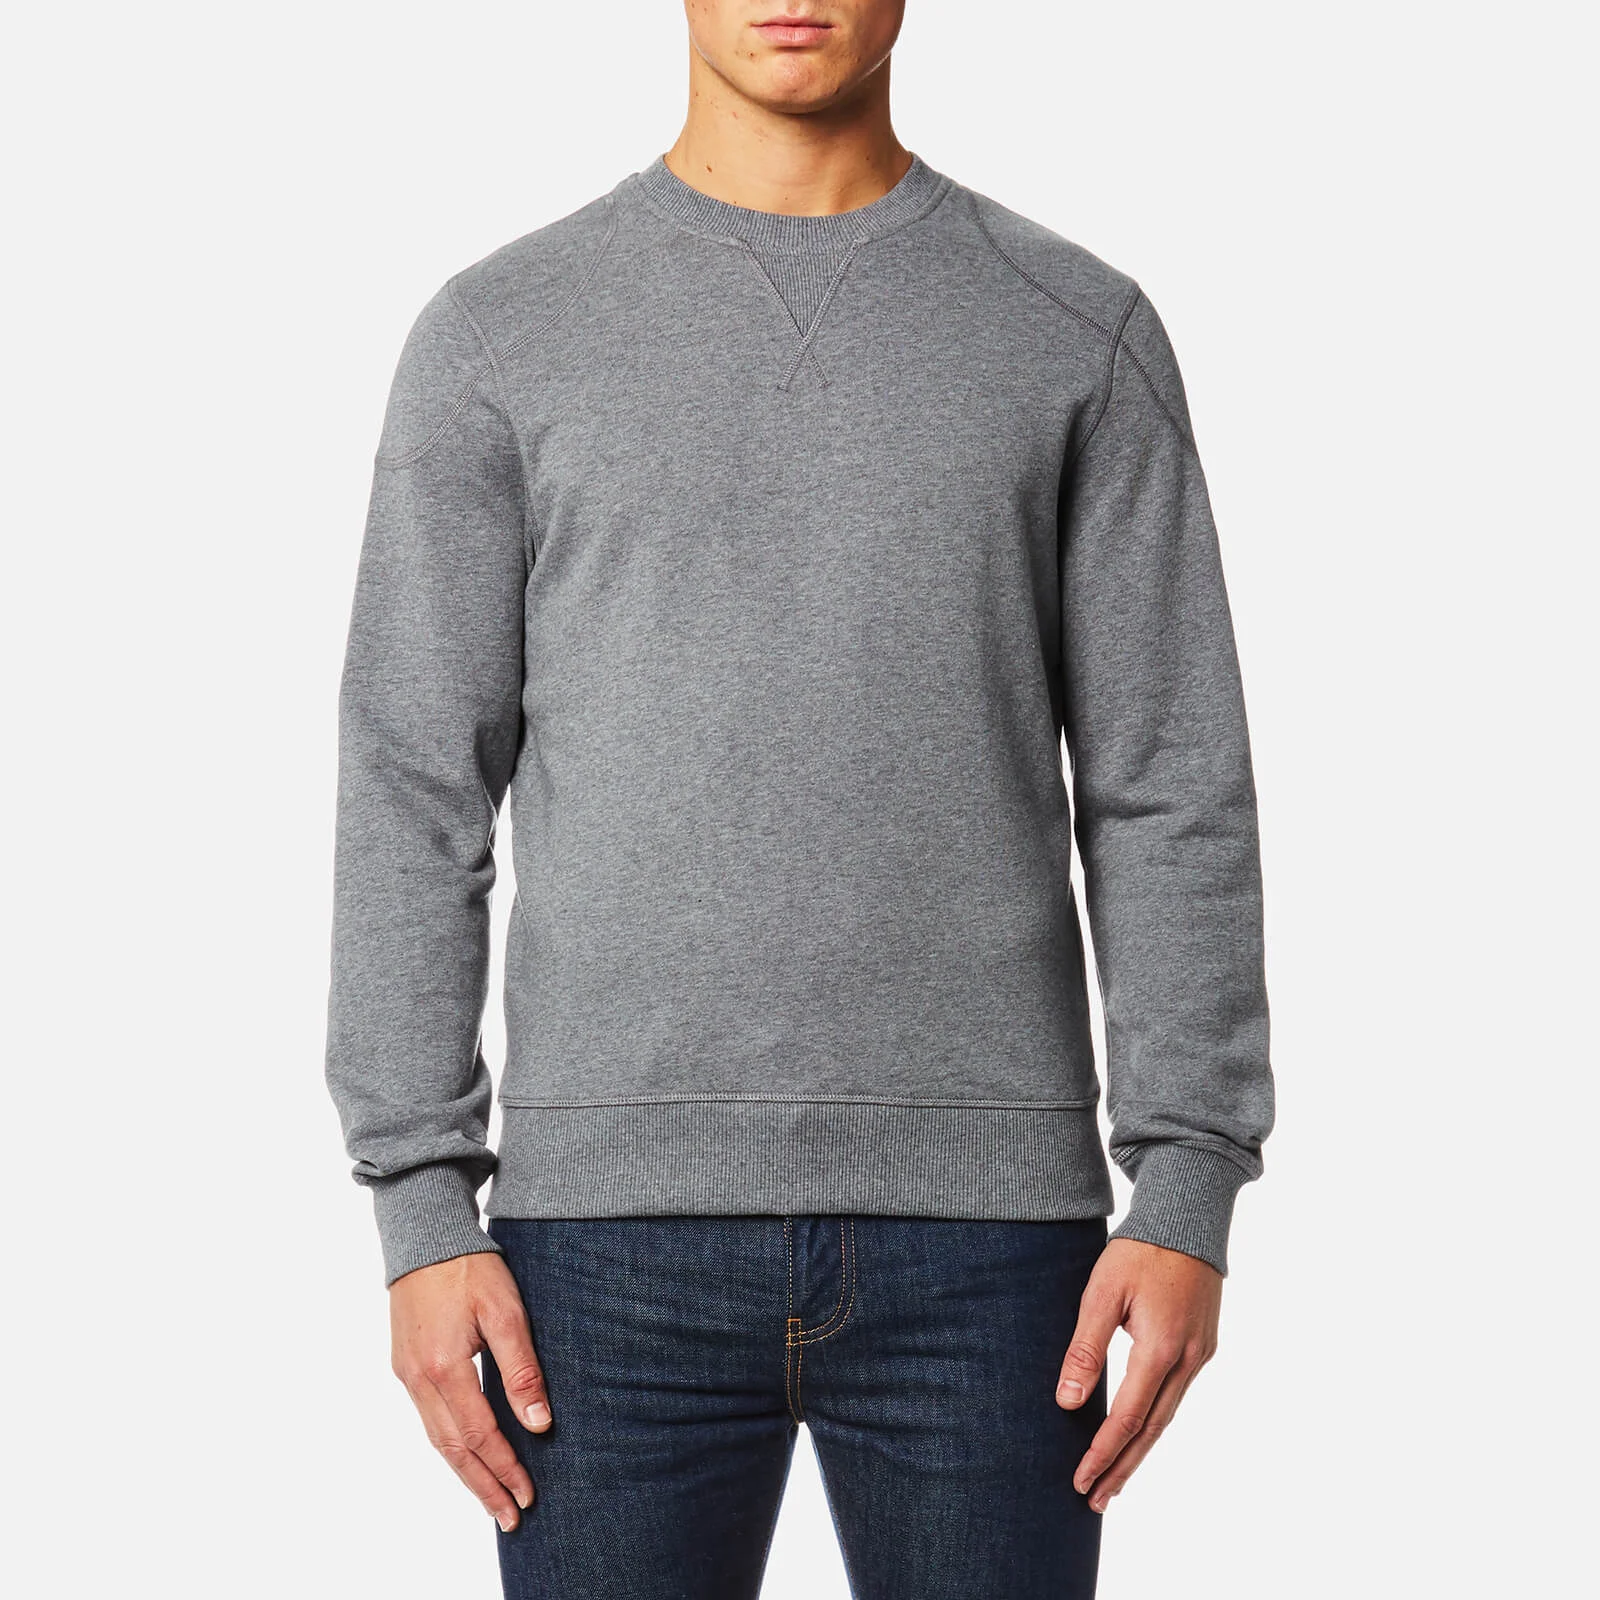 Belstaff Men's Jefferson Sweatshirt - Dark Grey Melange Image 1